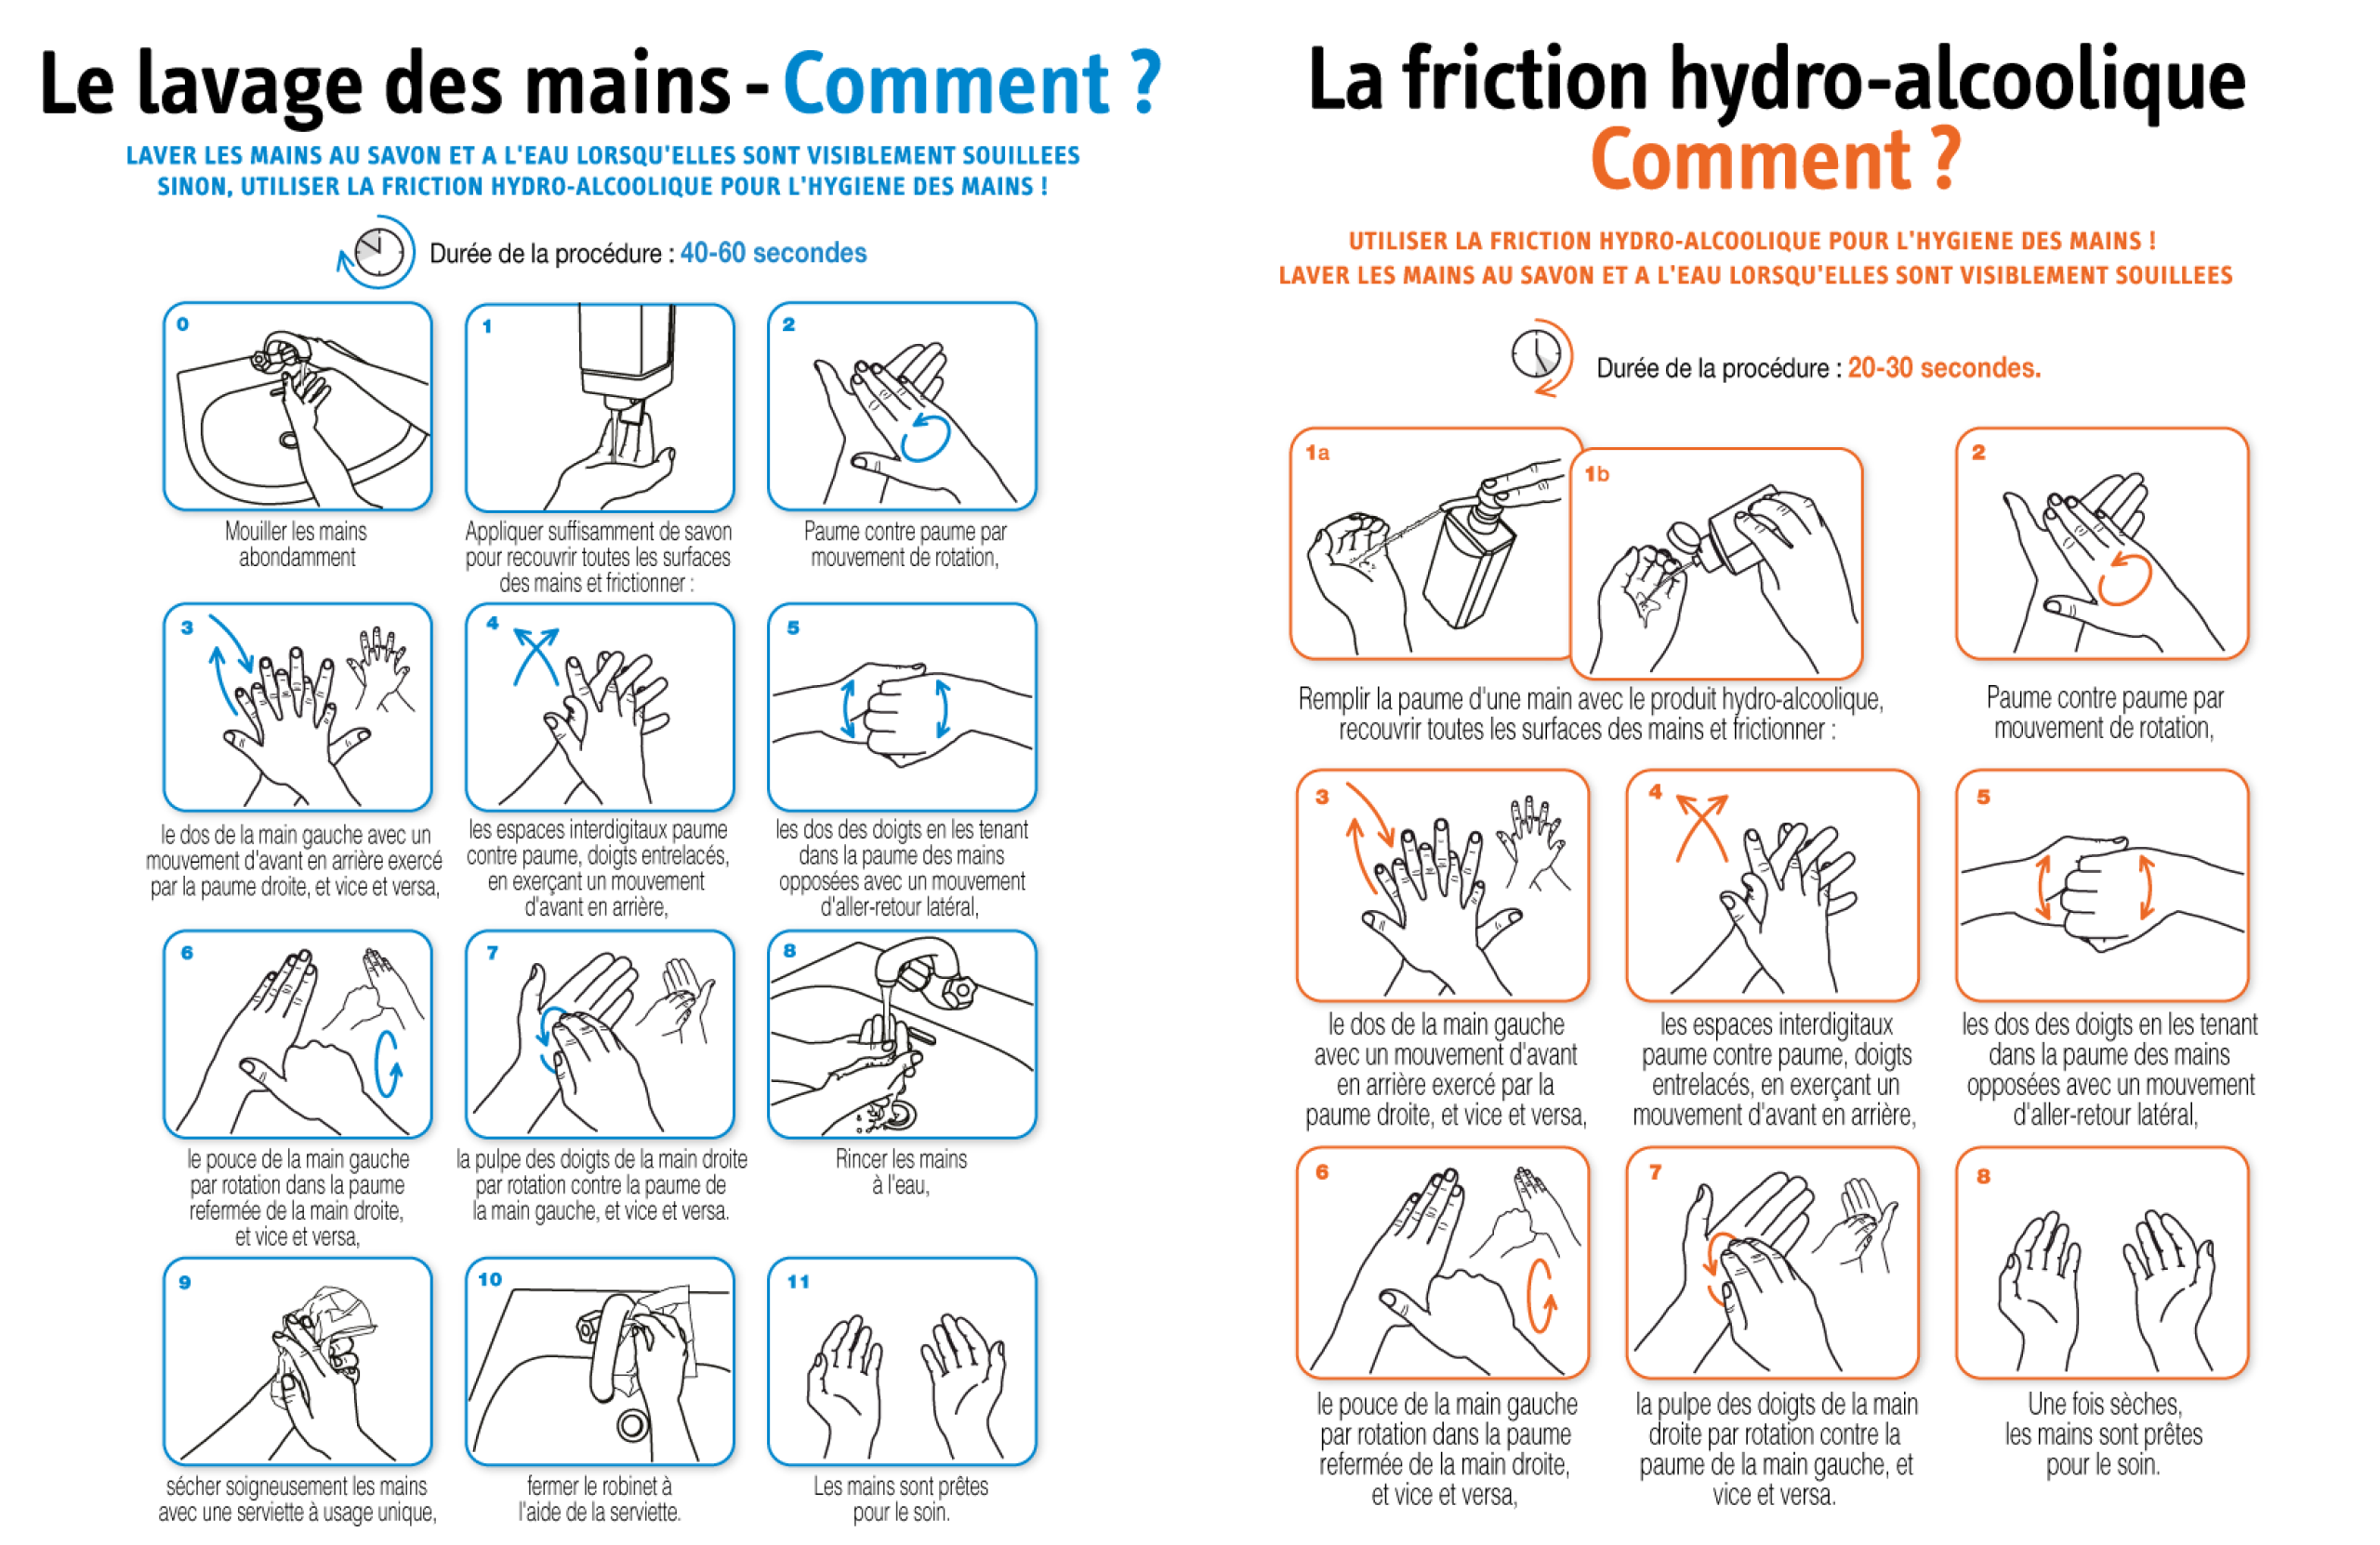 Le lavage des mains & la friction hydro-alcoolique - comment ? 